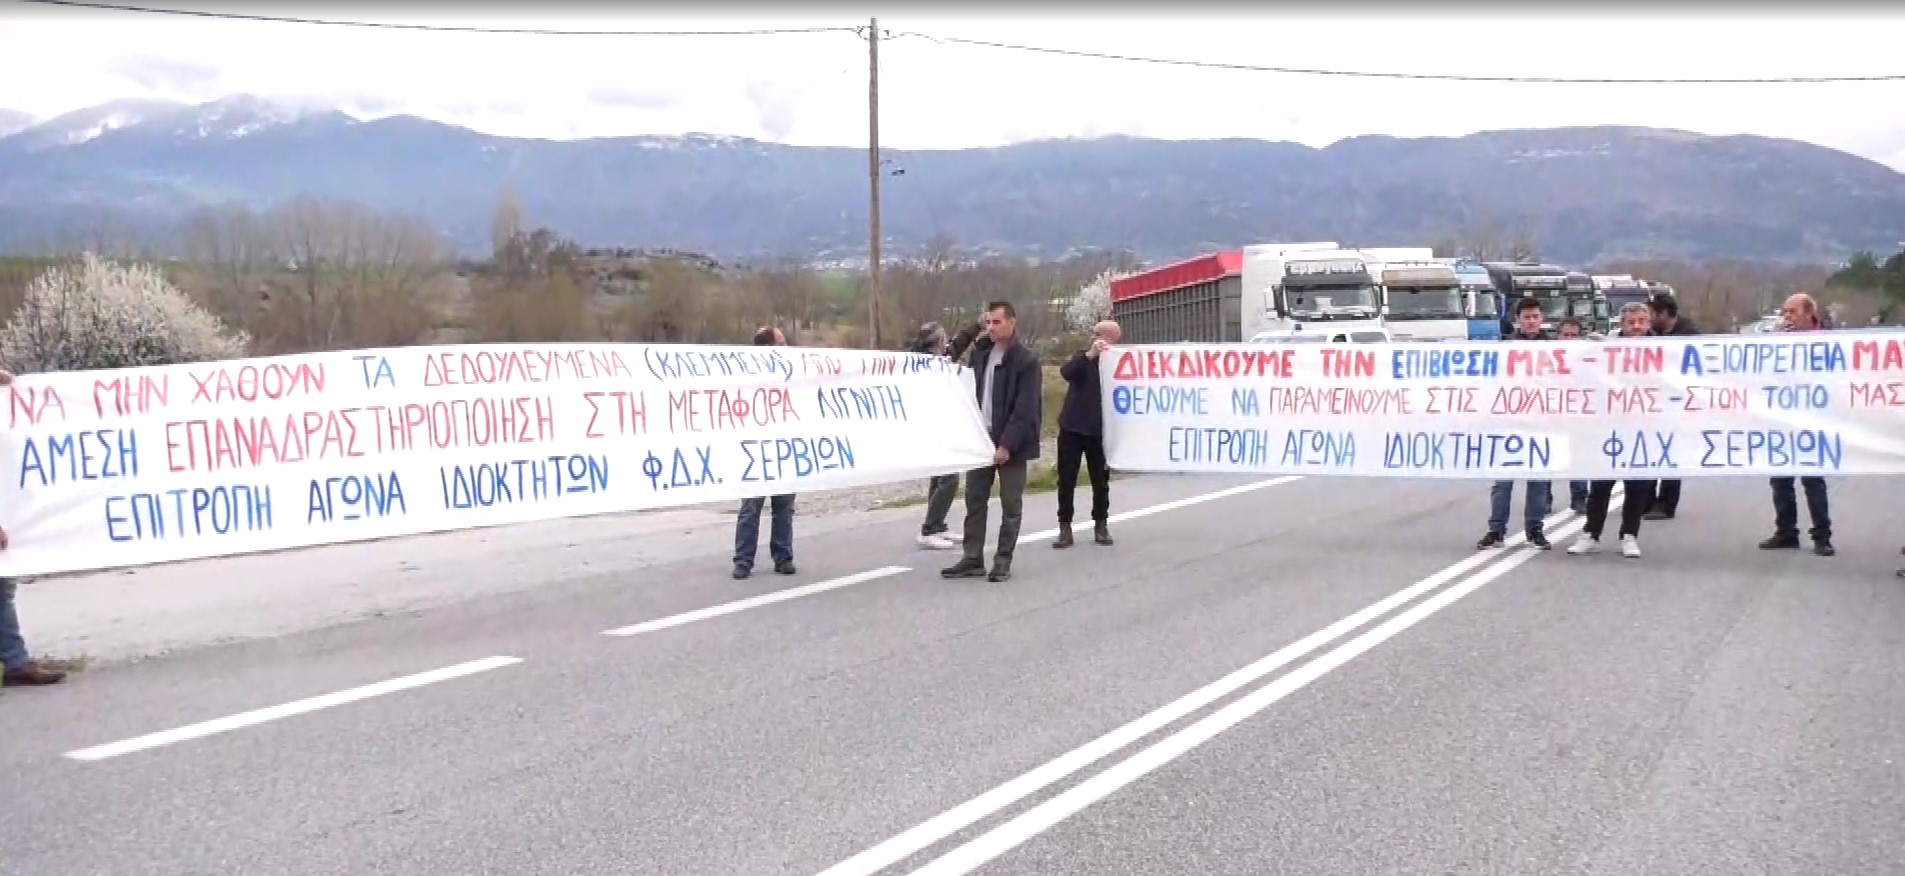 Ιδιοκτήτες φορτηγών δημόσιας χρήσης απέκλεισαν τη γέφυρα των Σερβίων